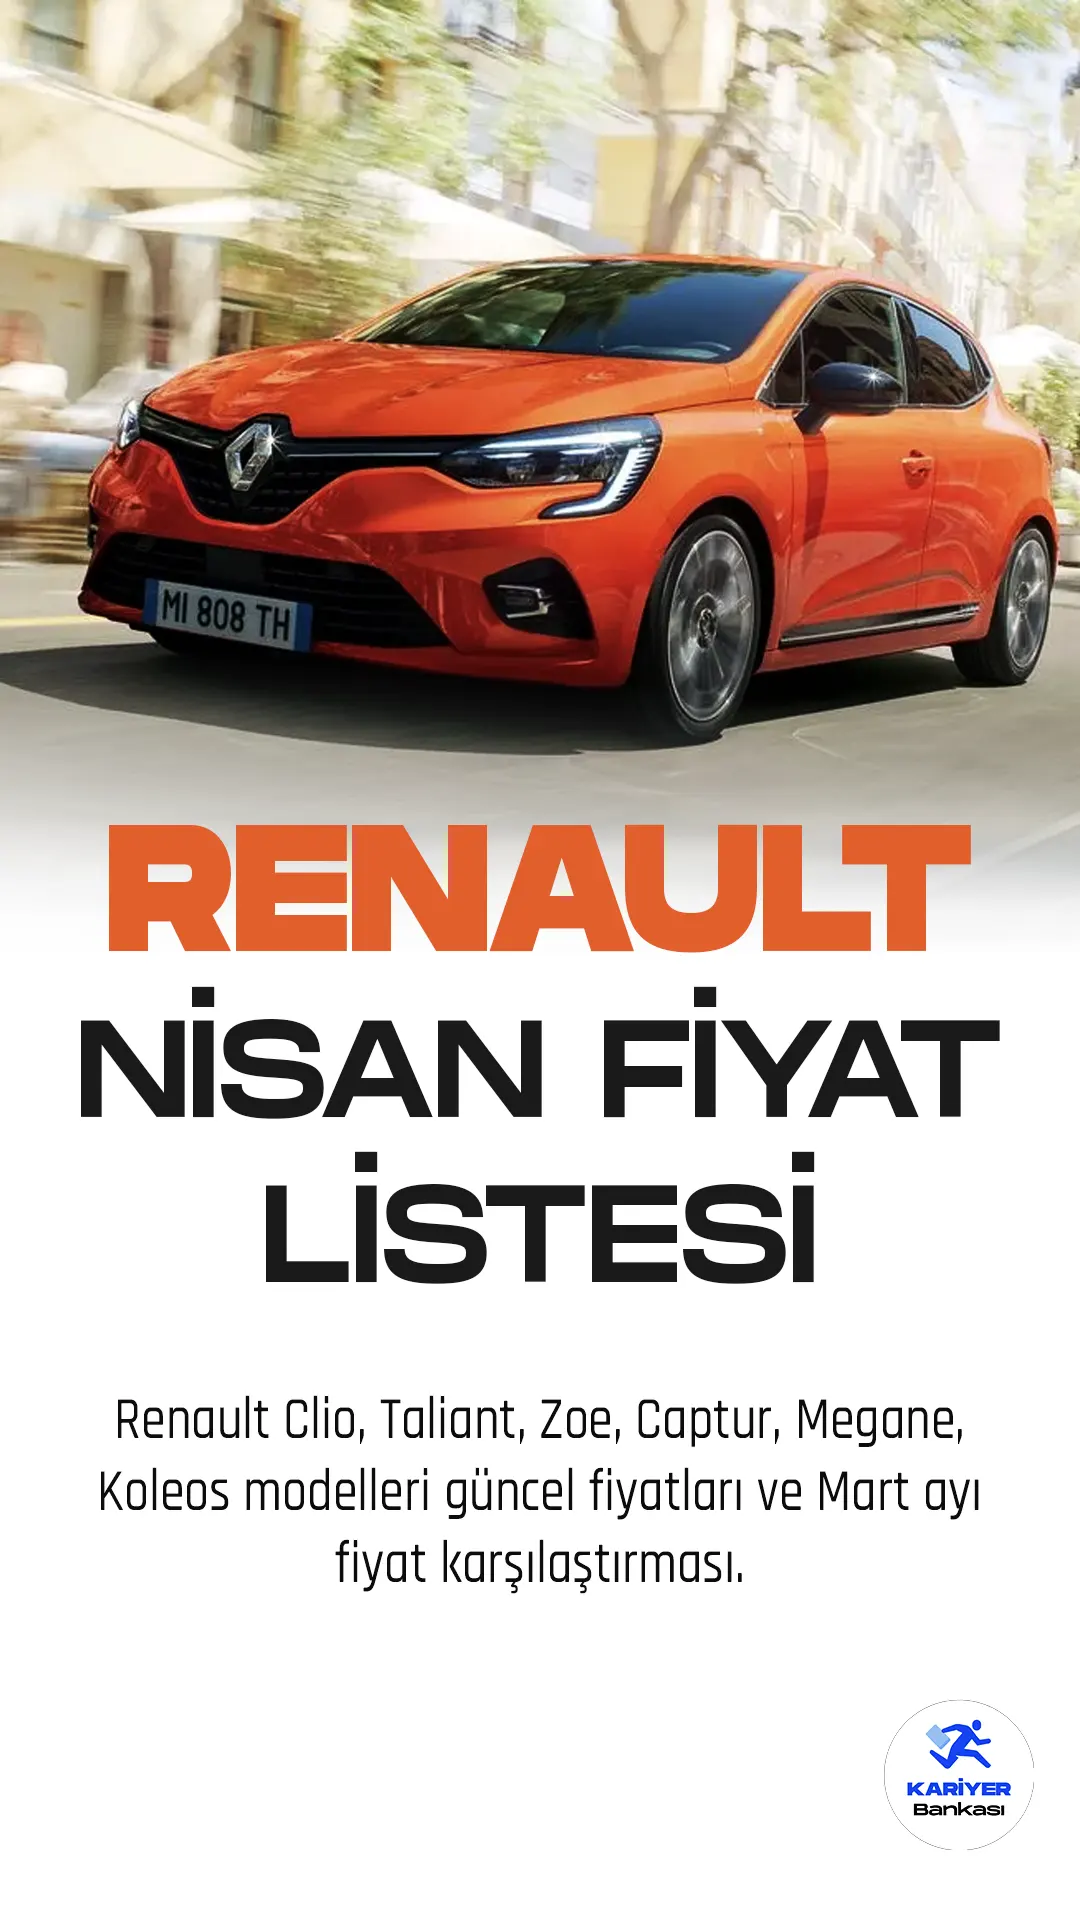 Renault Nisan 2023 Fiyat Listesi Yayımlandı! Renault Clio, Taliant, Zoe, Captur, Megane ve Koleos modelleri ile son zamanlarda oldukça popüler hale geldi.